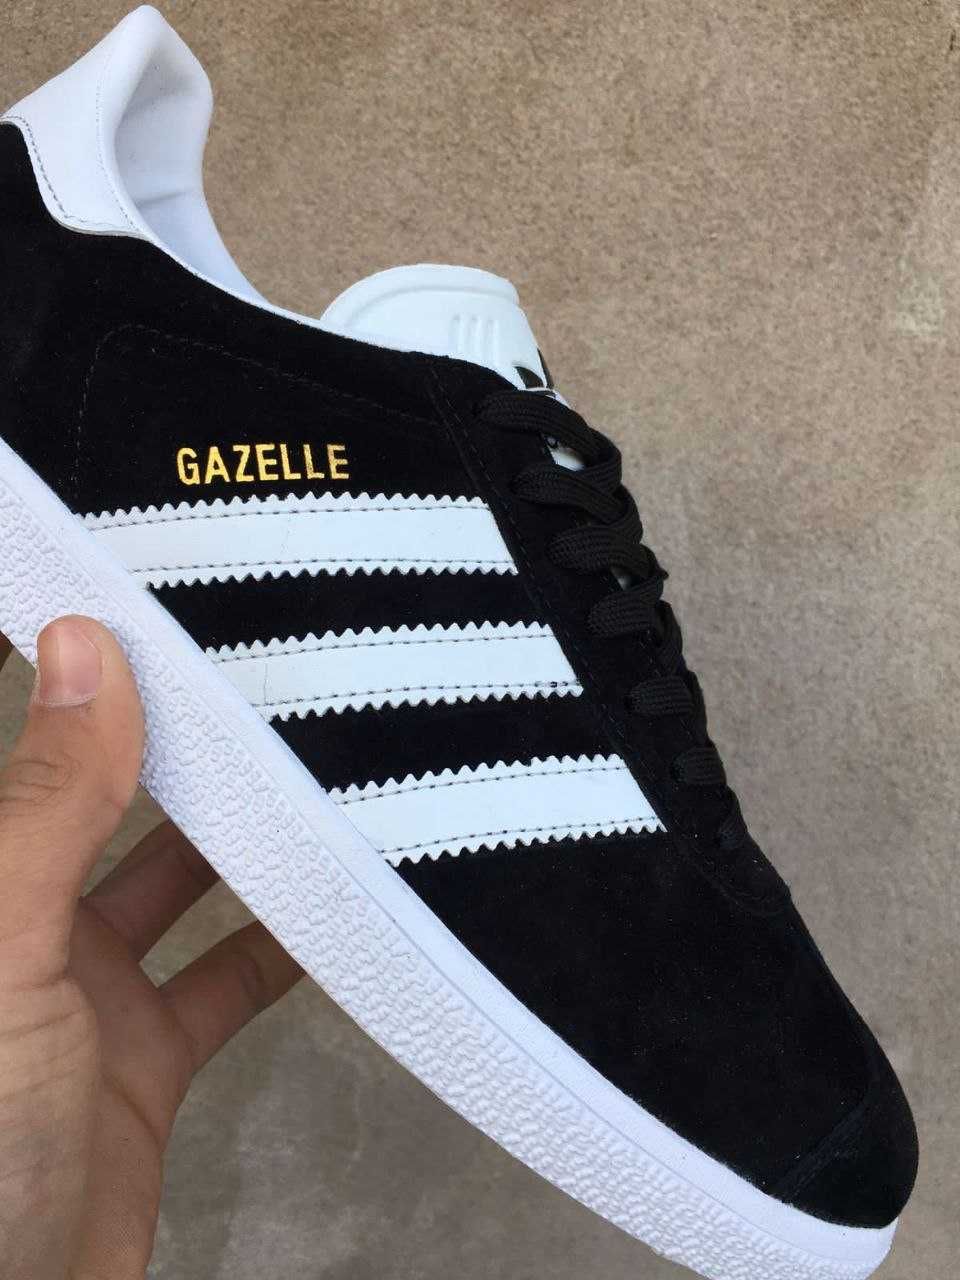 Adidas gazelle 89